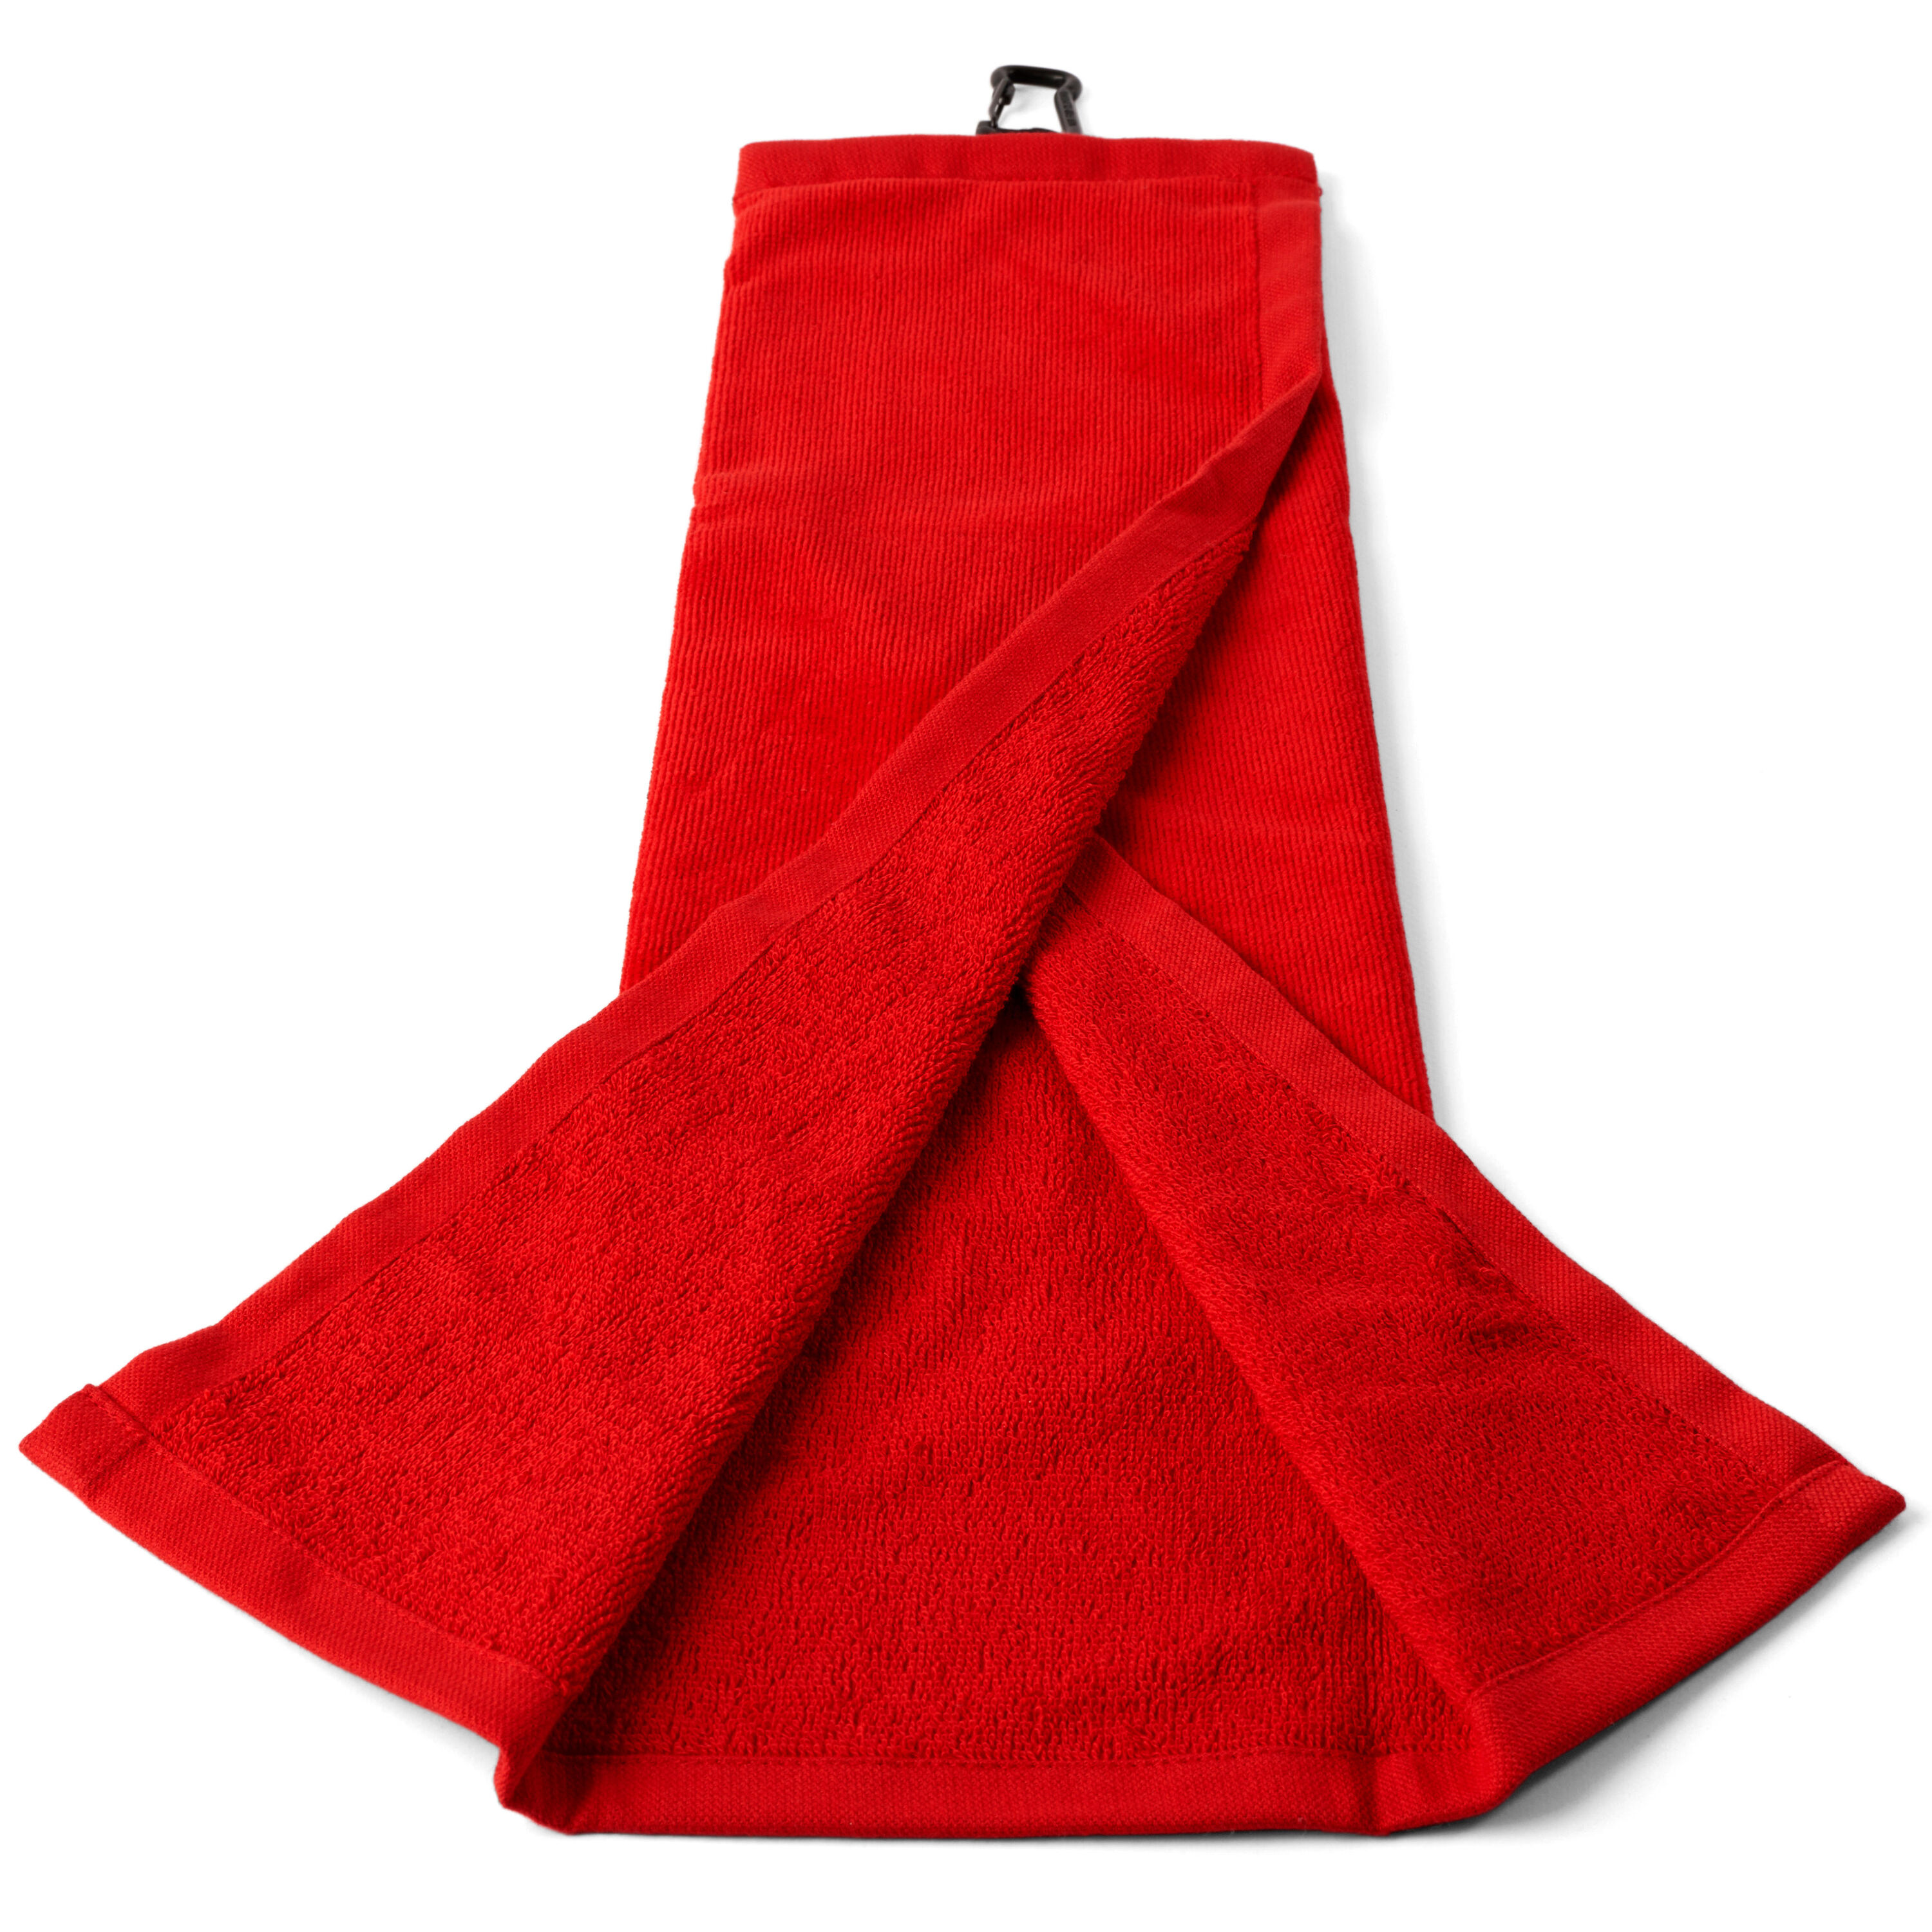 INESIS TRI-FOLD GOLF TOWEL - INESIS RED